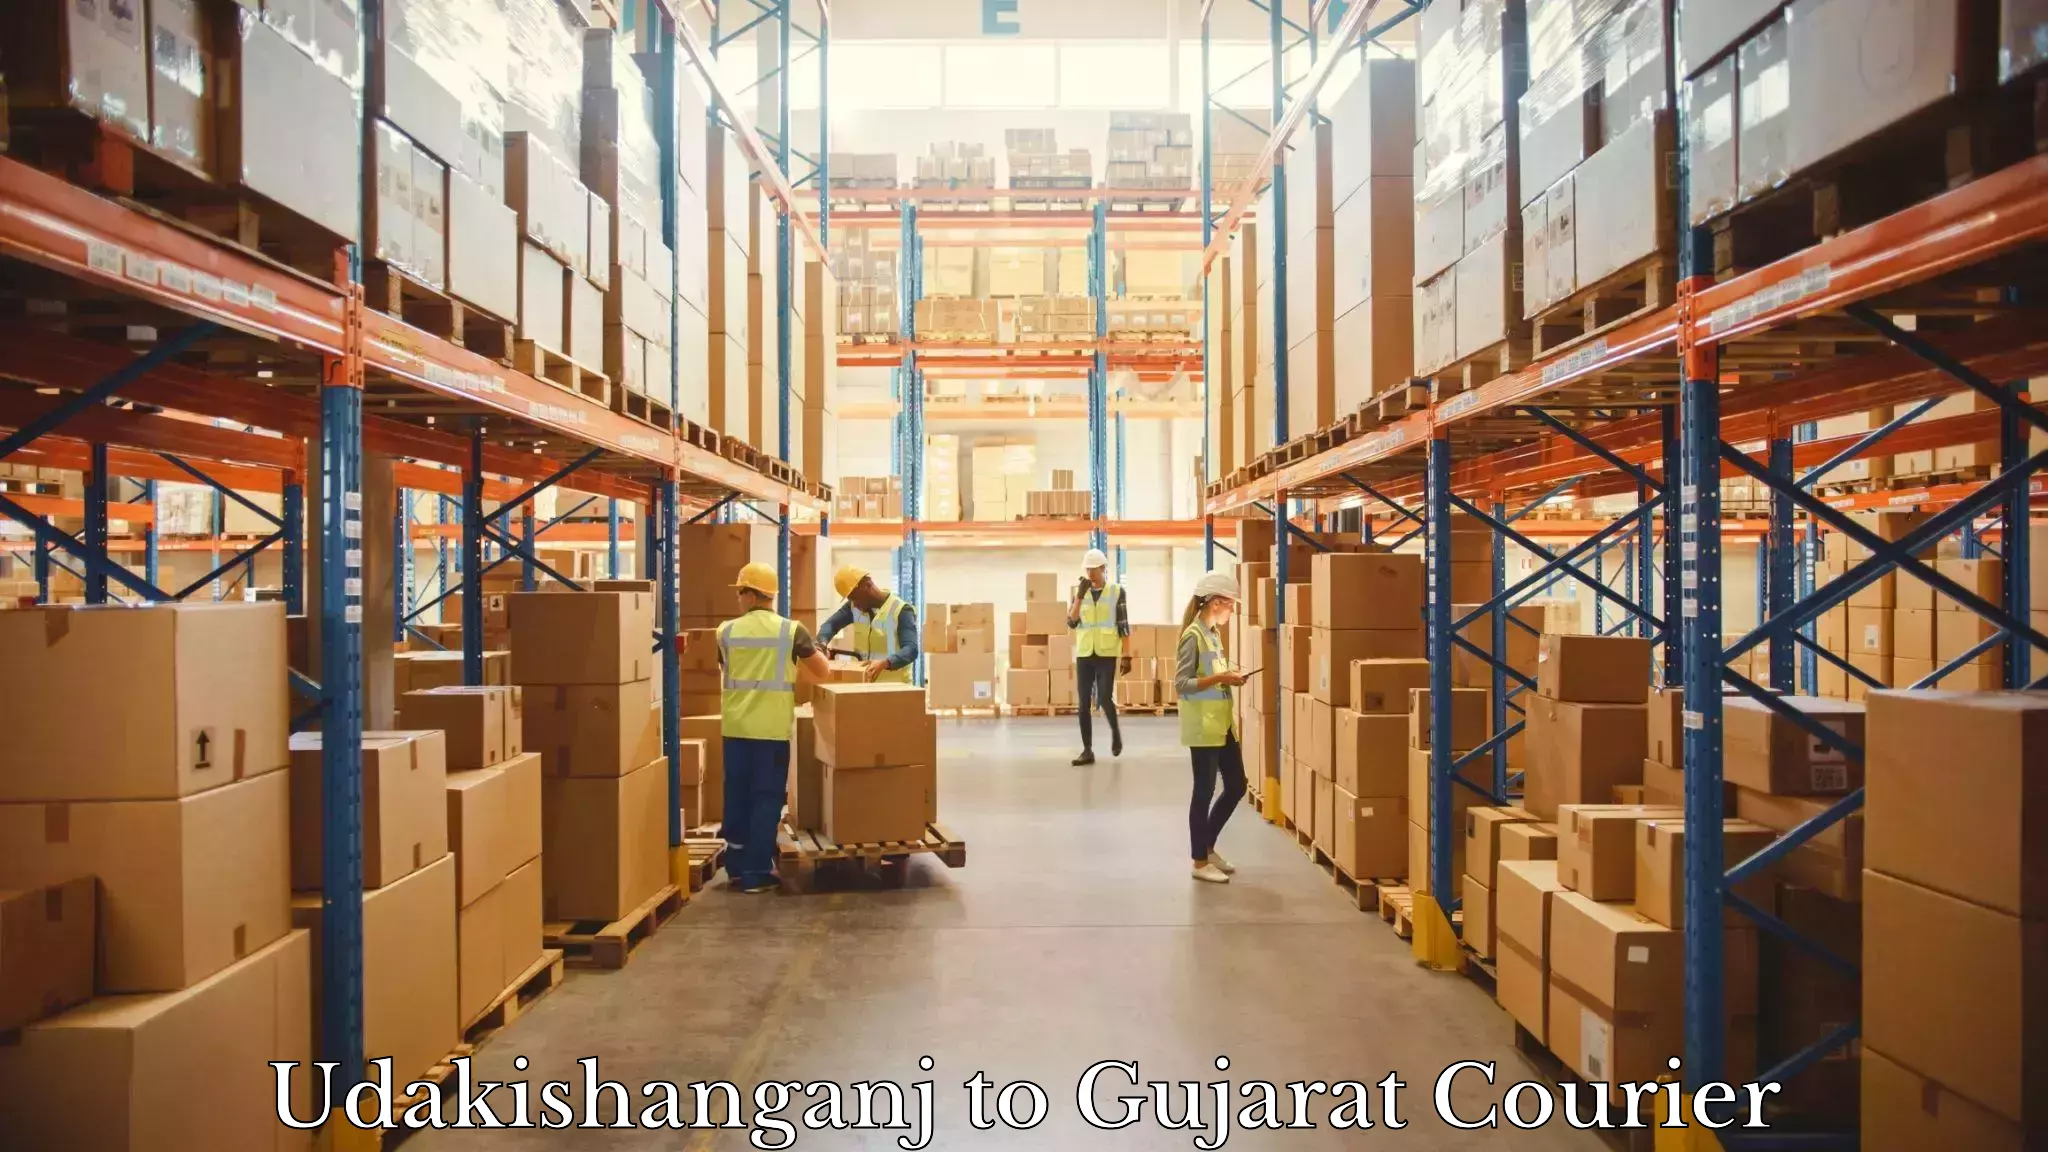 Global logistics network Udakishanganj to Wankaner